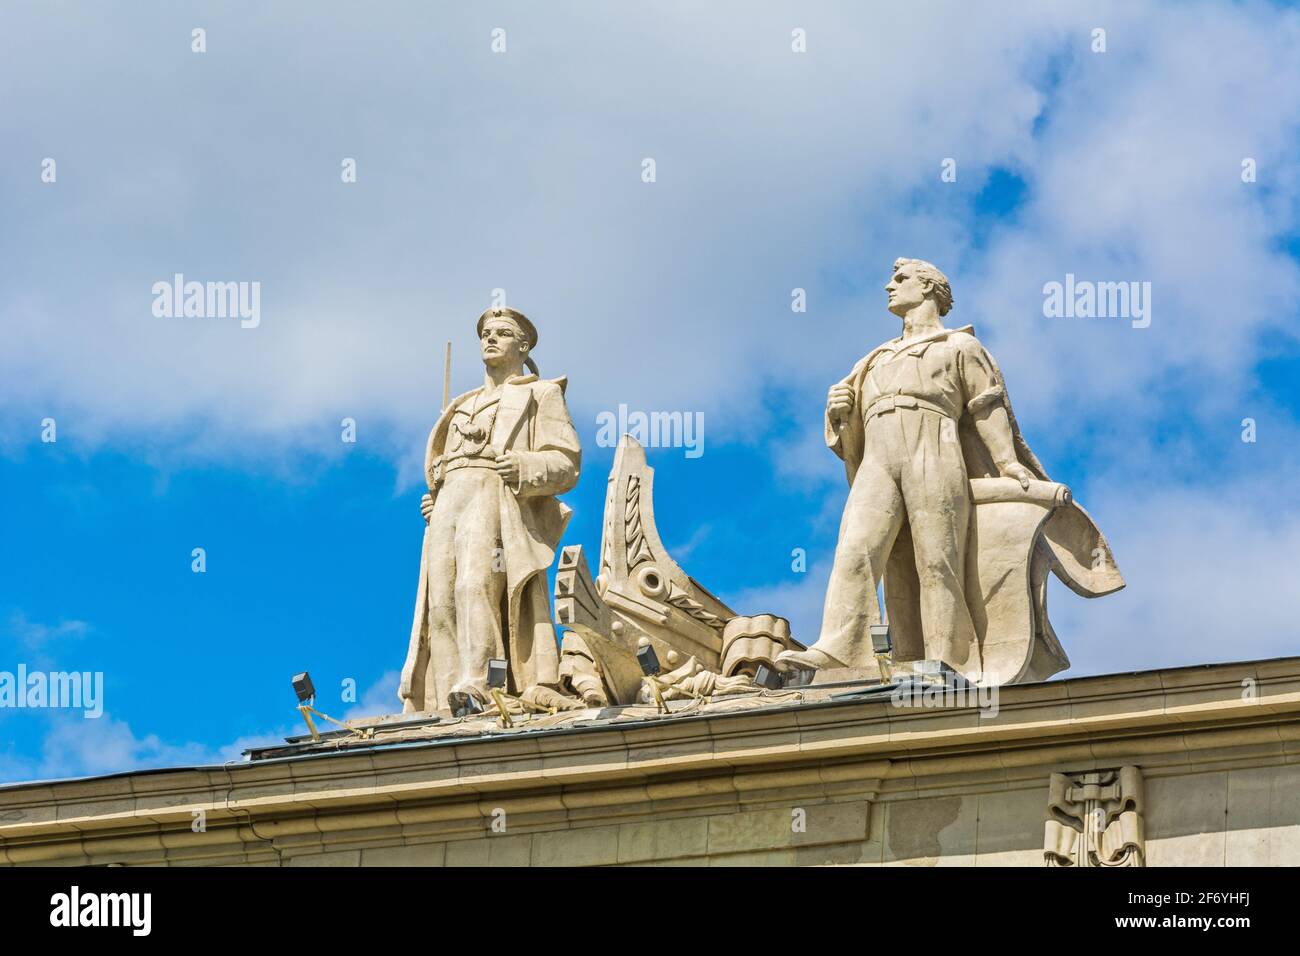 ST. PETERSBURG, RUSSLAND - 30. MAI 2017: Sowjetischer Neoklassizismus - Statuen eines Matrosen und Ingenieurs schmücken das Wohngebäude der Mitarbeiter des Peop Stockfoto